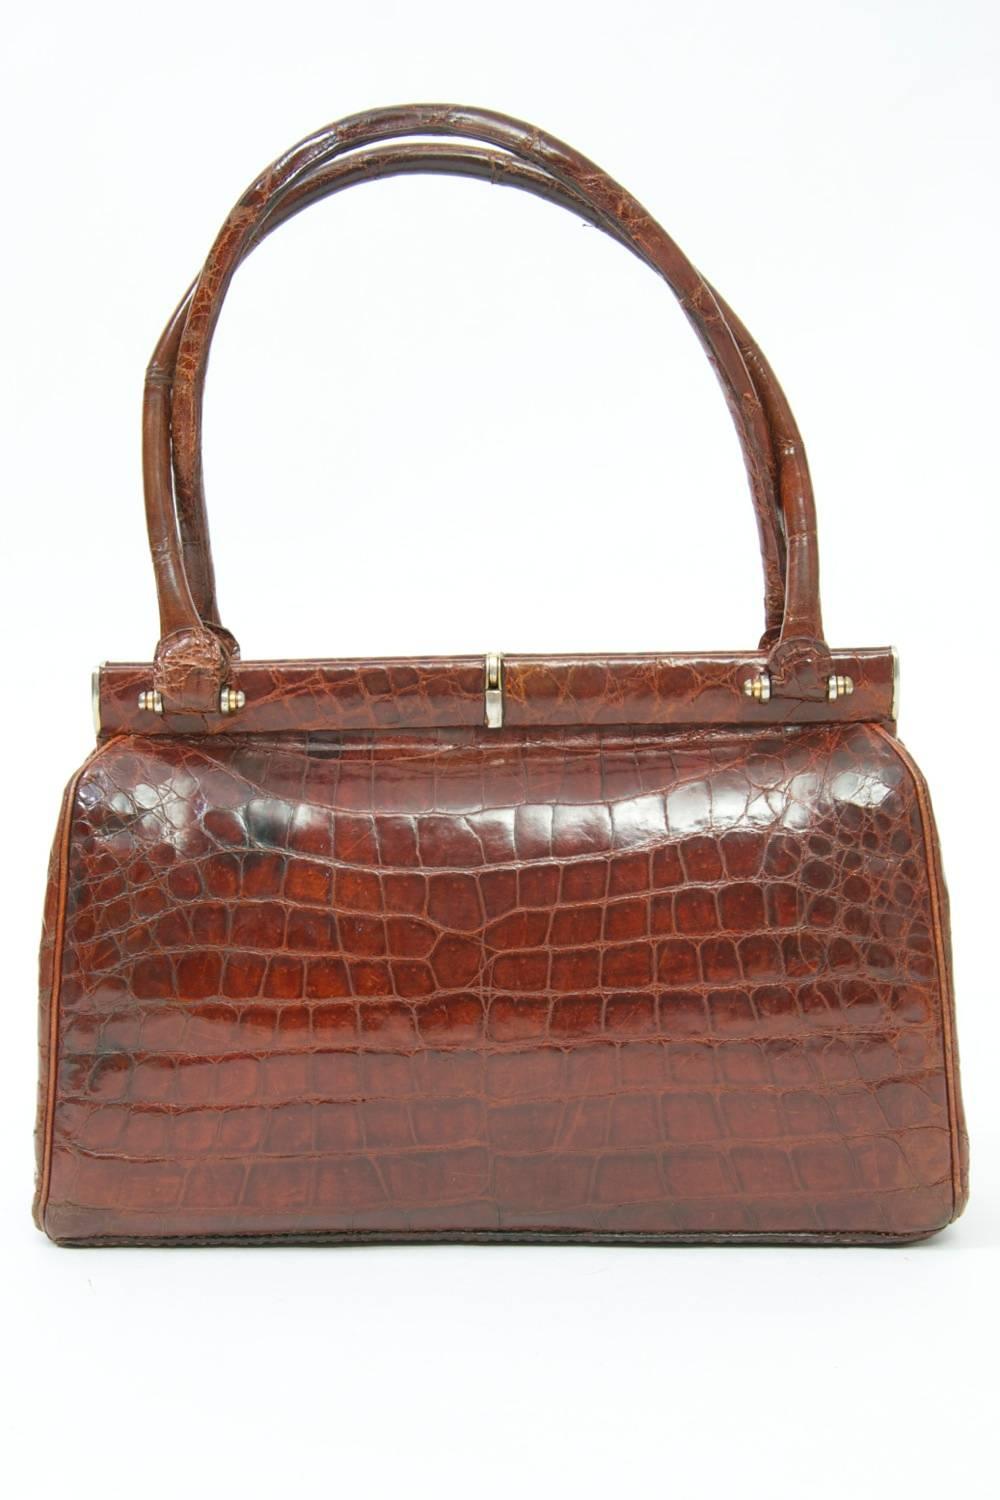 Brown Cognac Crocodile Handbag, France